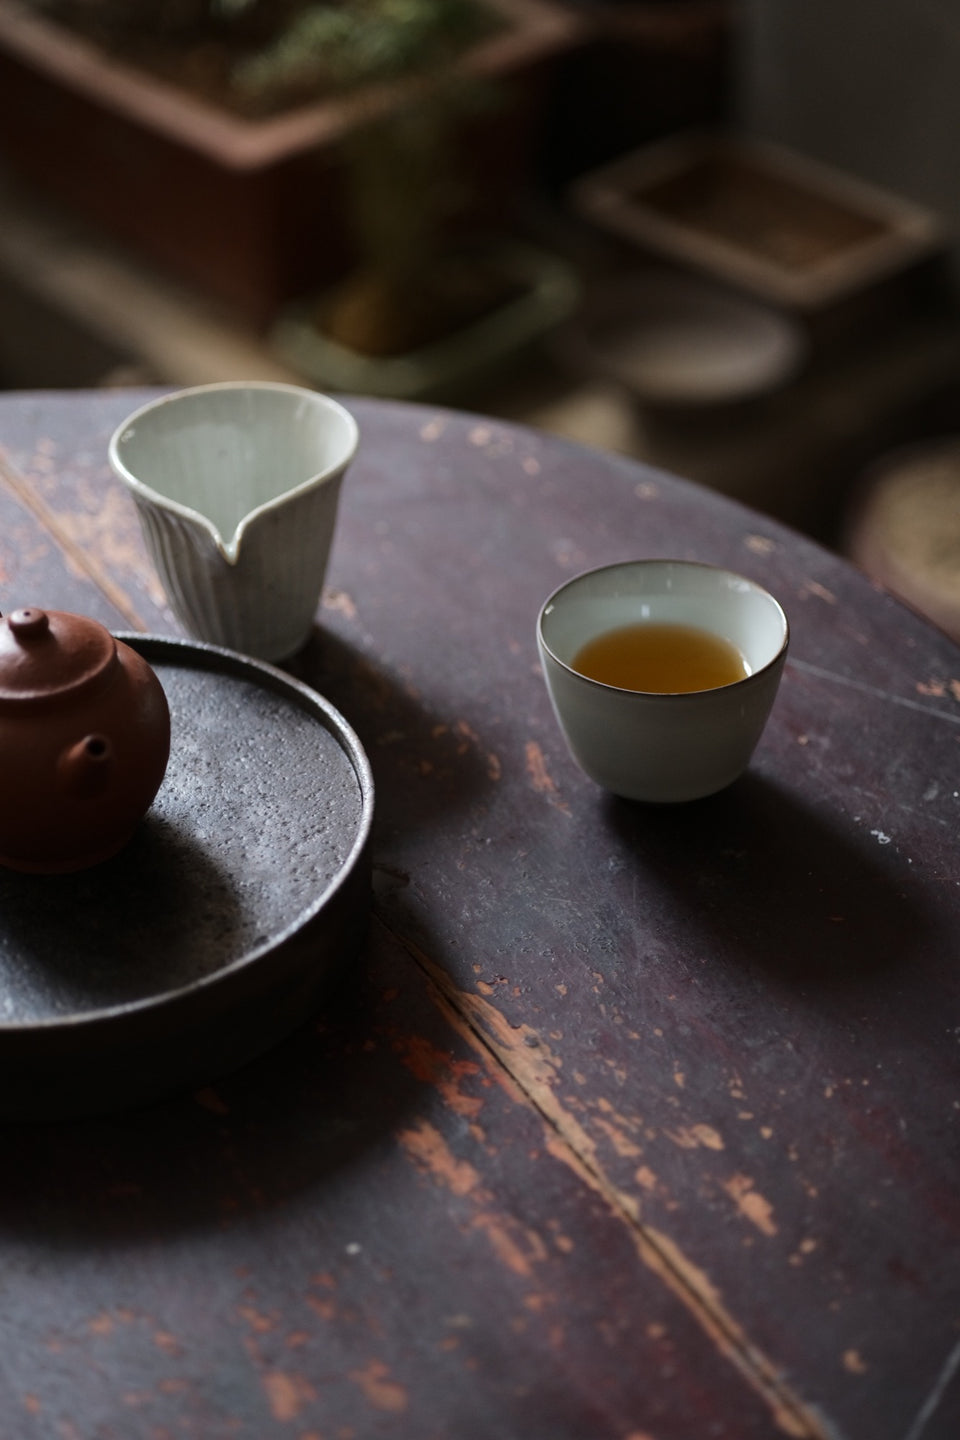 Ruyao-style Host Teacups